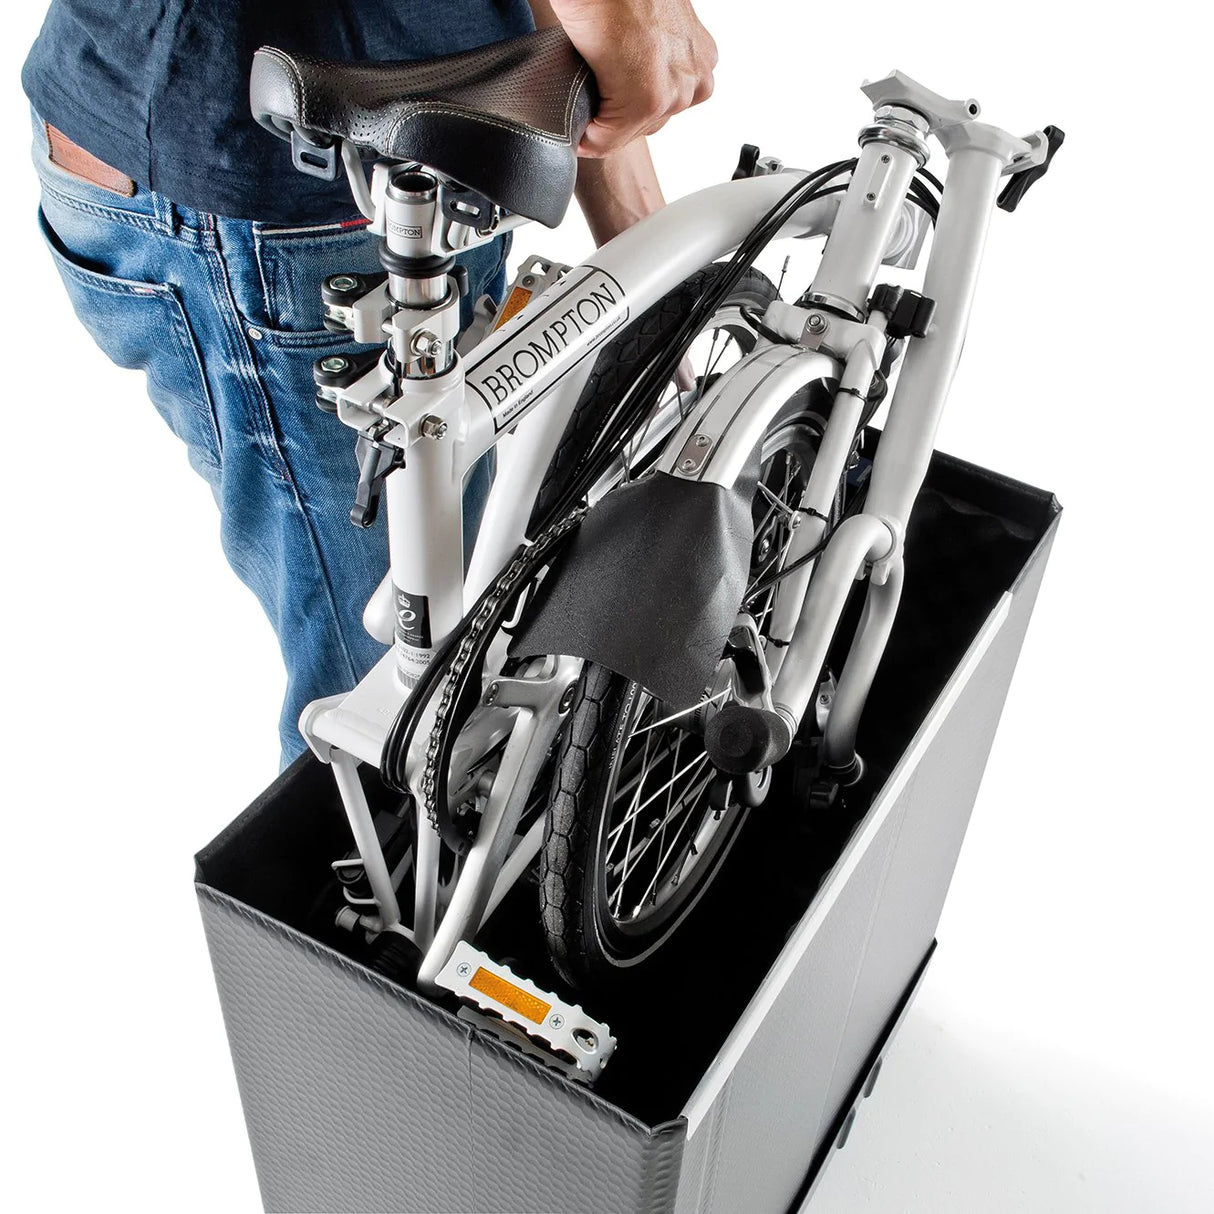 B&W Protection/Transport - Foldon Box S - Foldon bike travel case